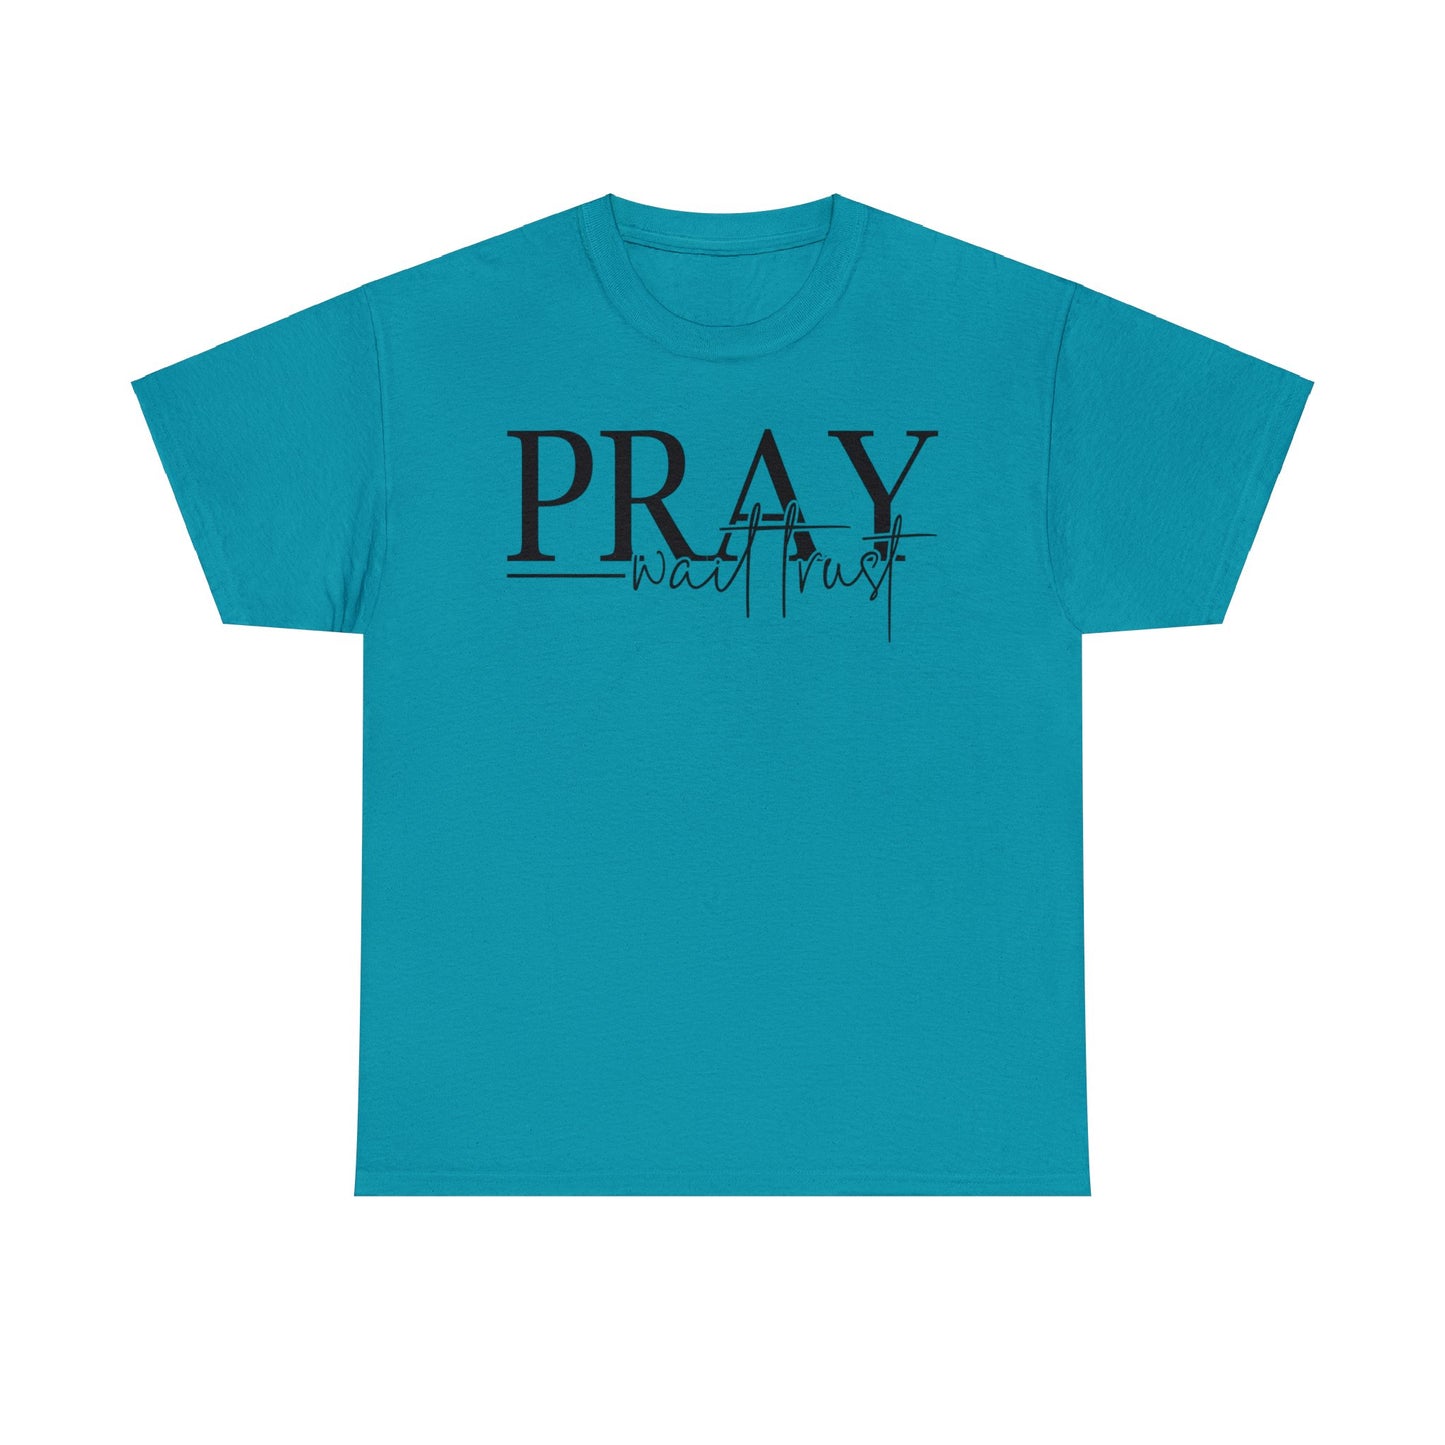 Pray Wait Trust Shirt, Christian Shirt, Religious Shirt, Faith Tee (Faith-18)